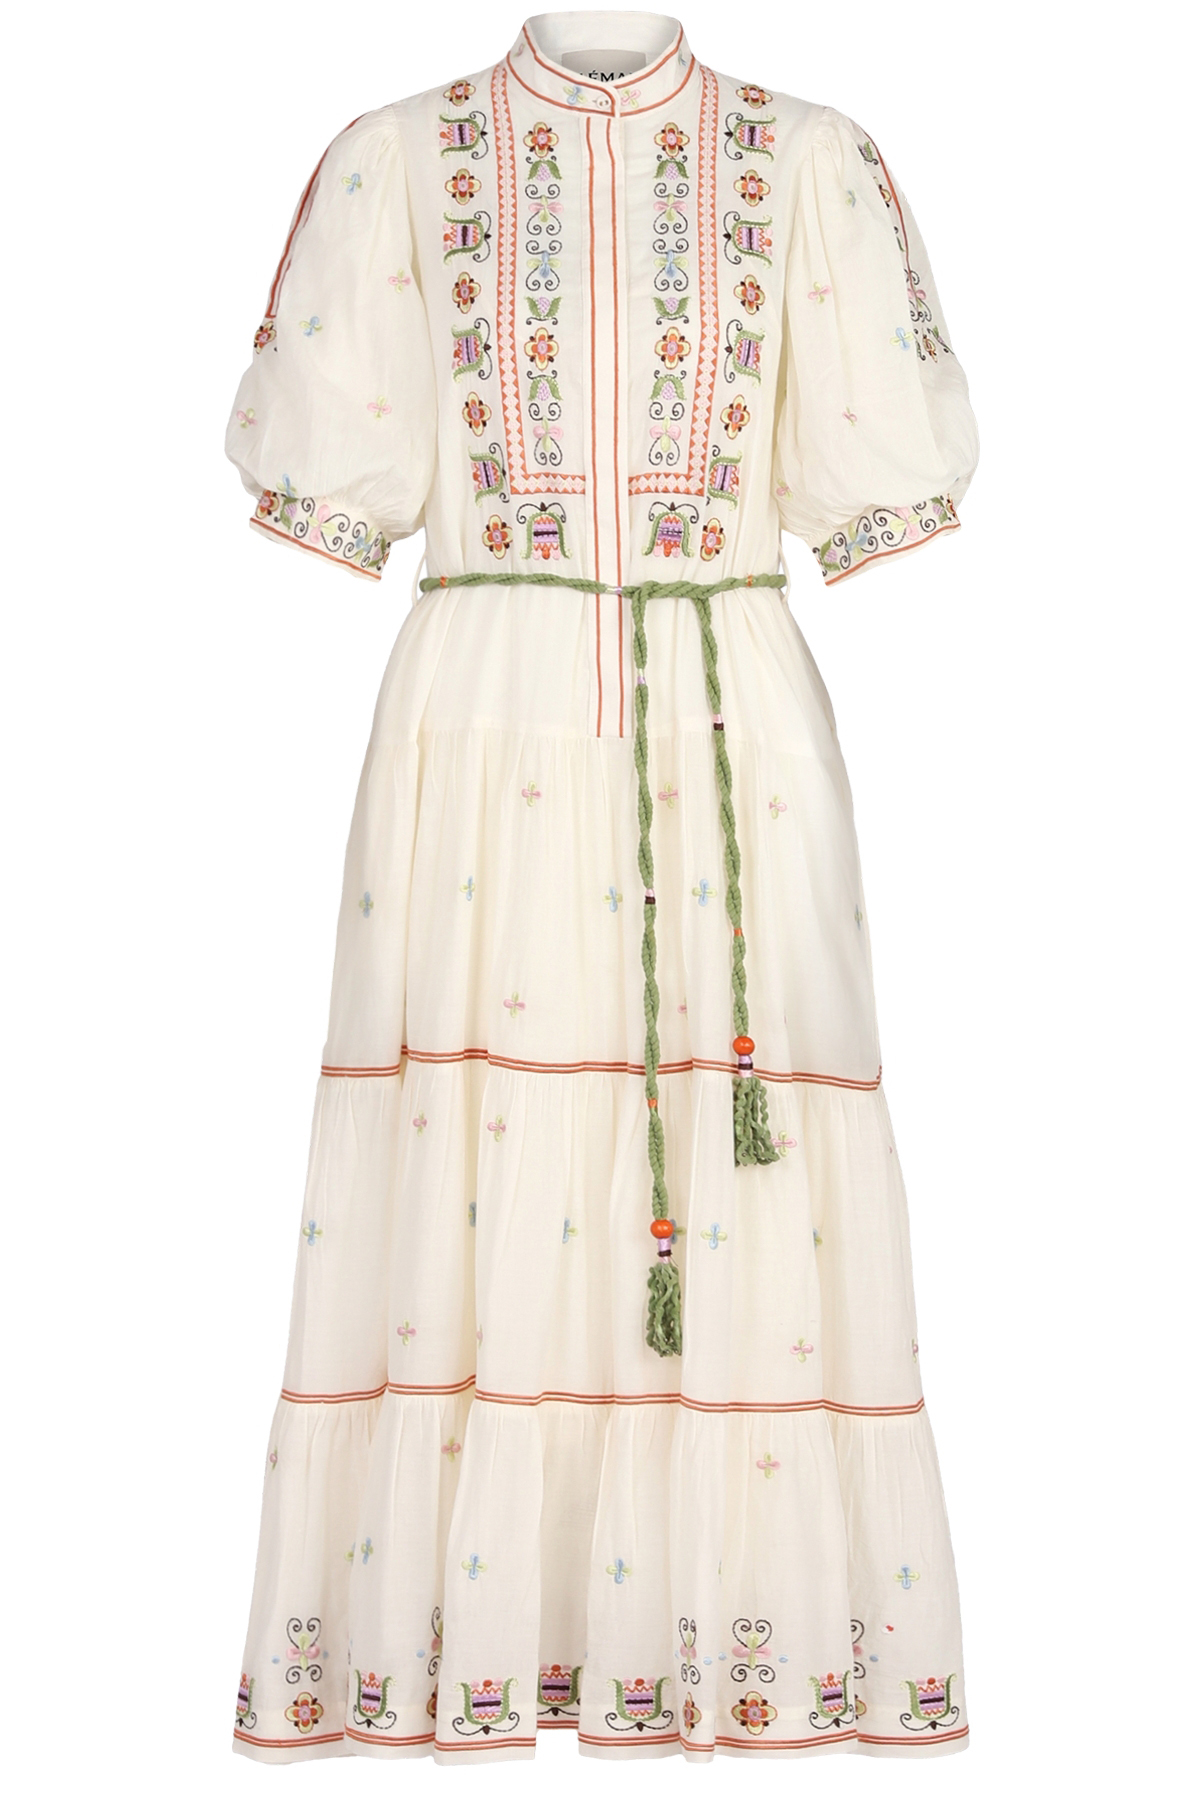 Besticktes Kleid Lovella aus Baumwolle 